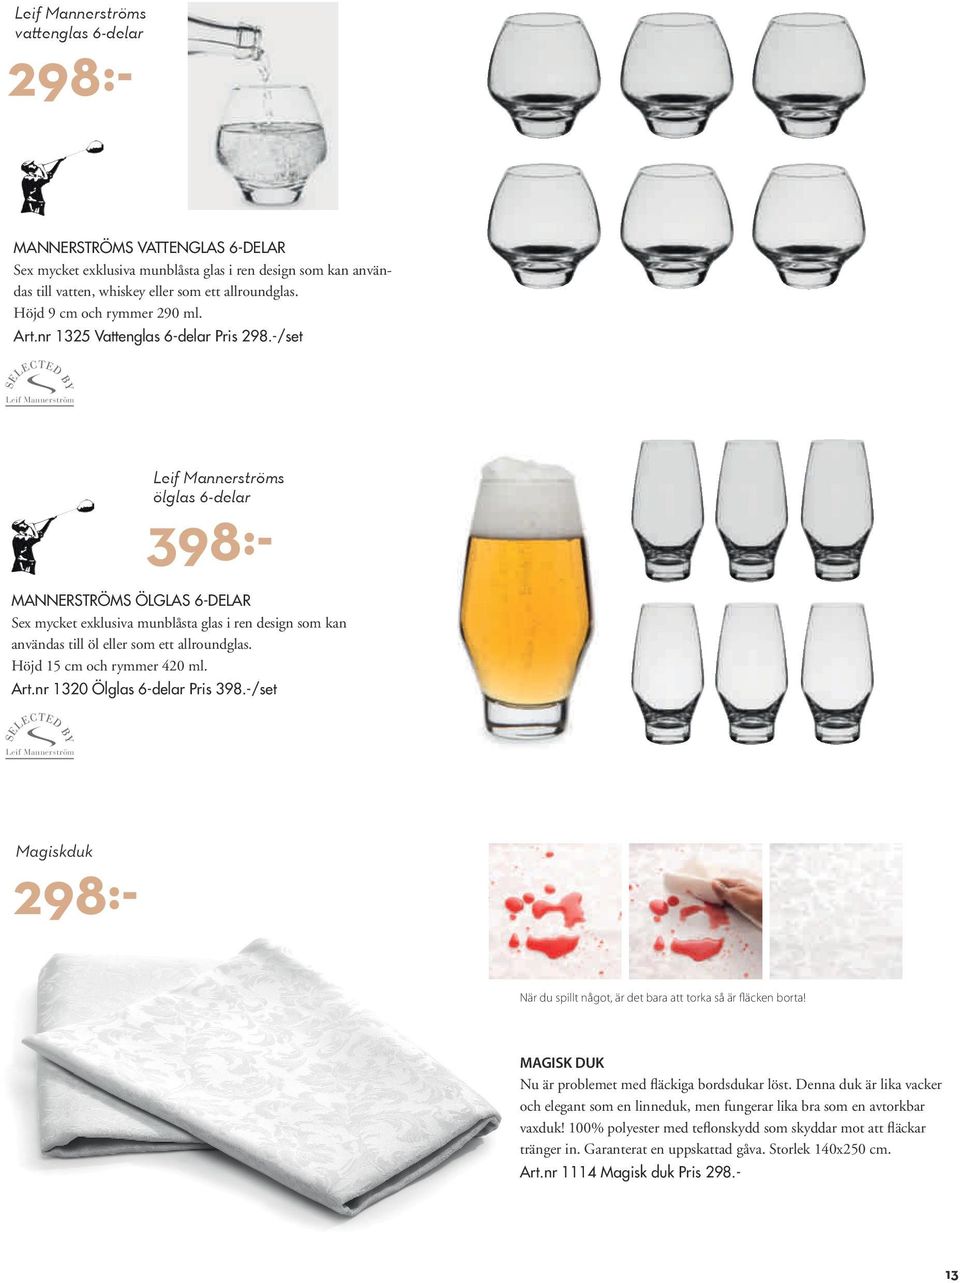 -/set Leif ölglas 6-delar 398:- MANNERSTRÖMS ÖLGLAS 6-DELAR Sex mycket exklusiva munblåsta glas i ren design som kan användas till öl eller som ett allroundglas. Höjd 15 cm och rymmer 420 ml. Art.